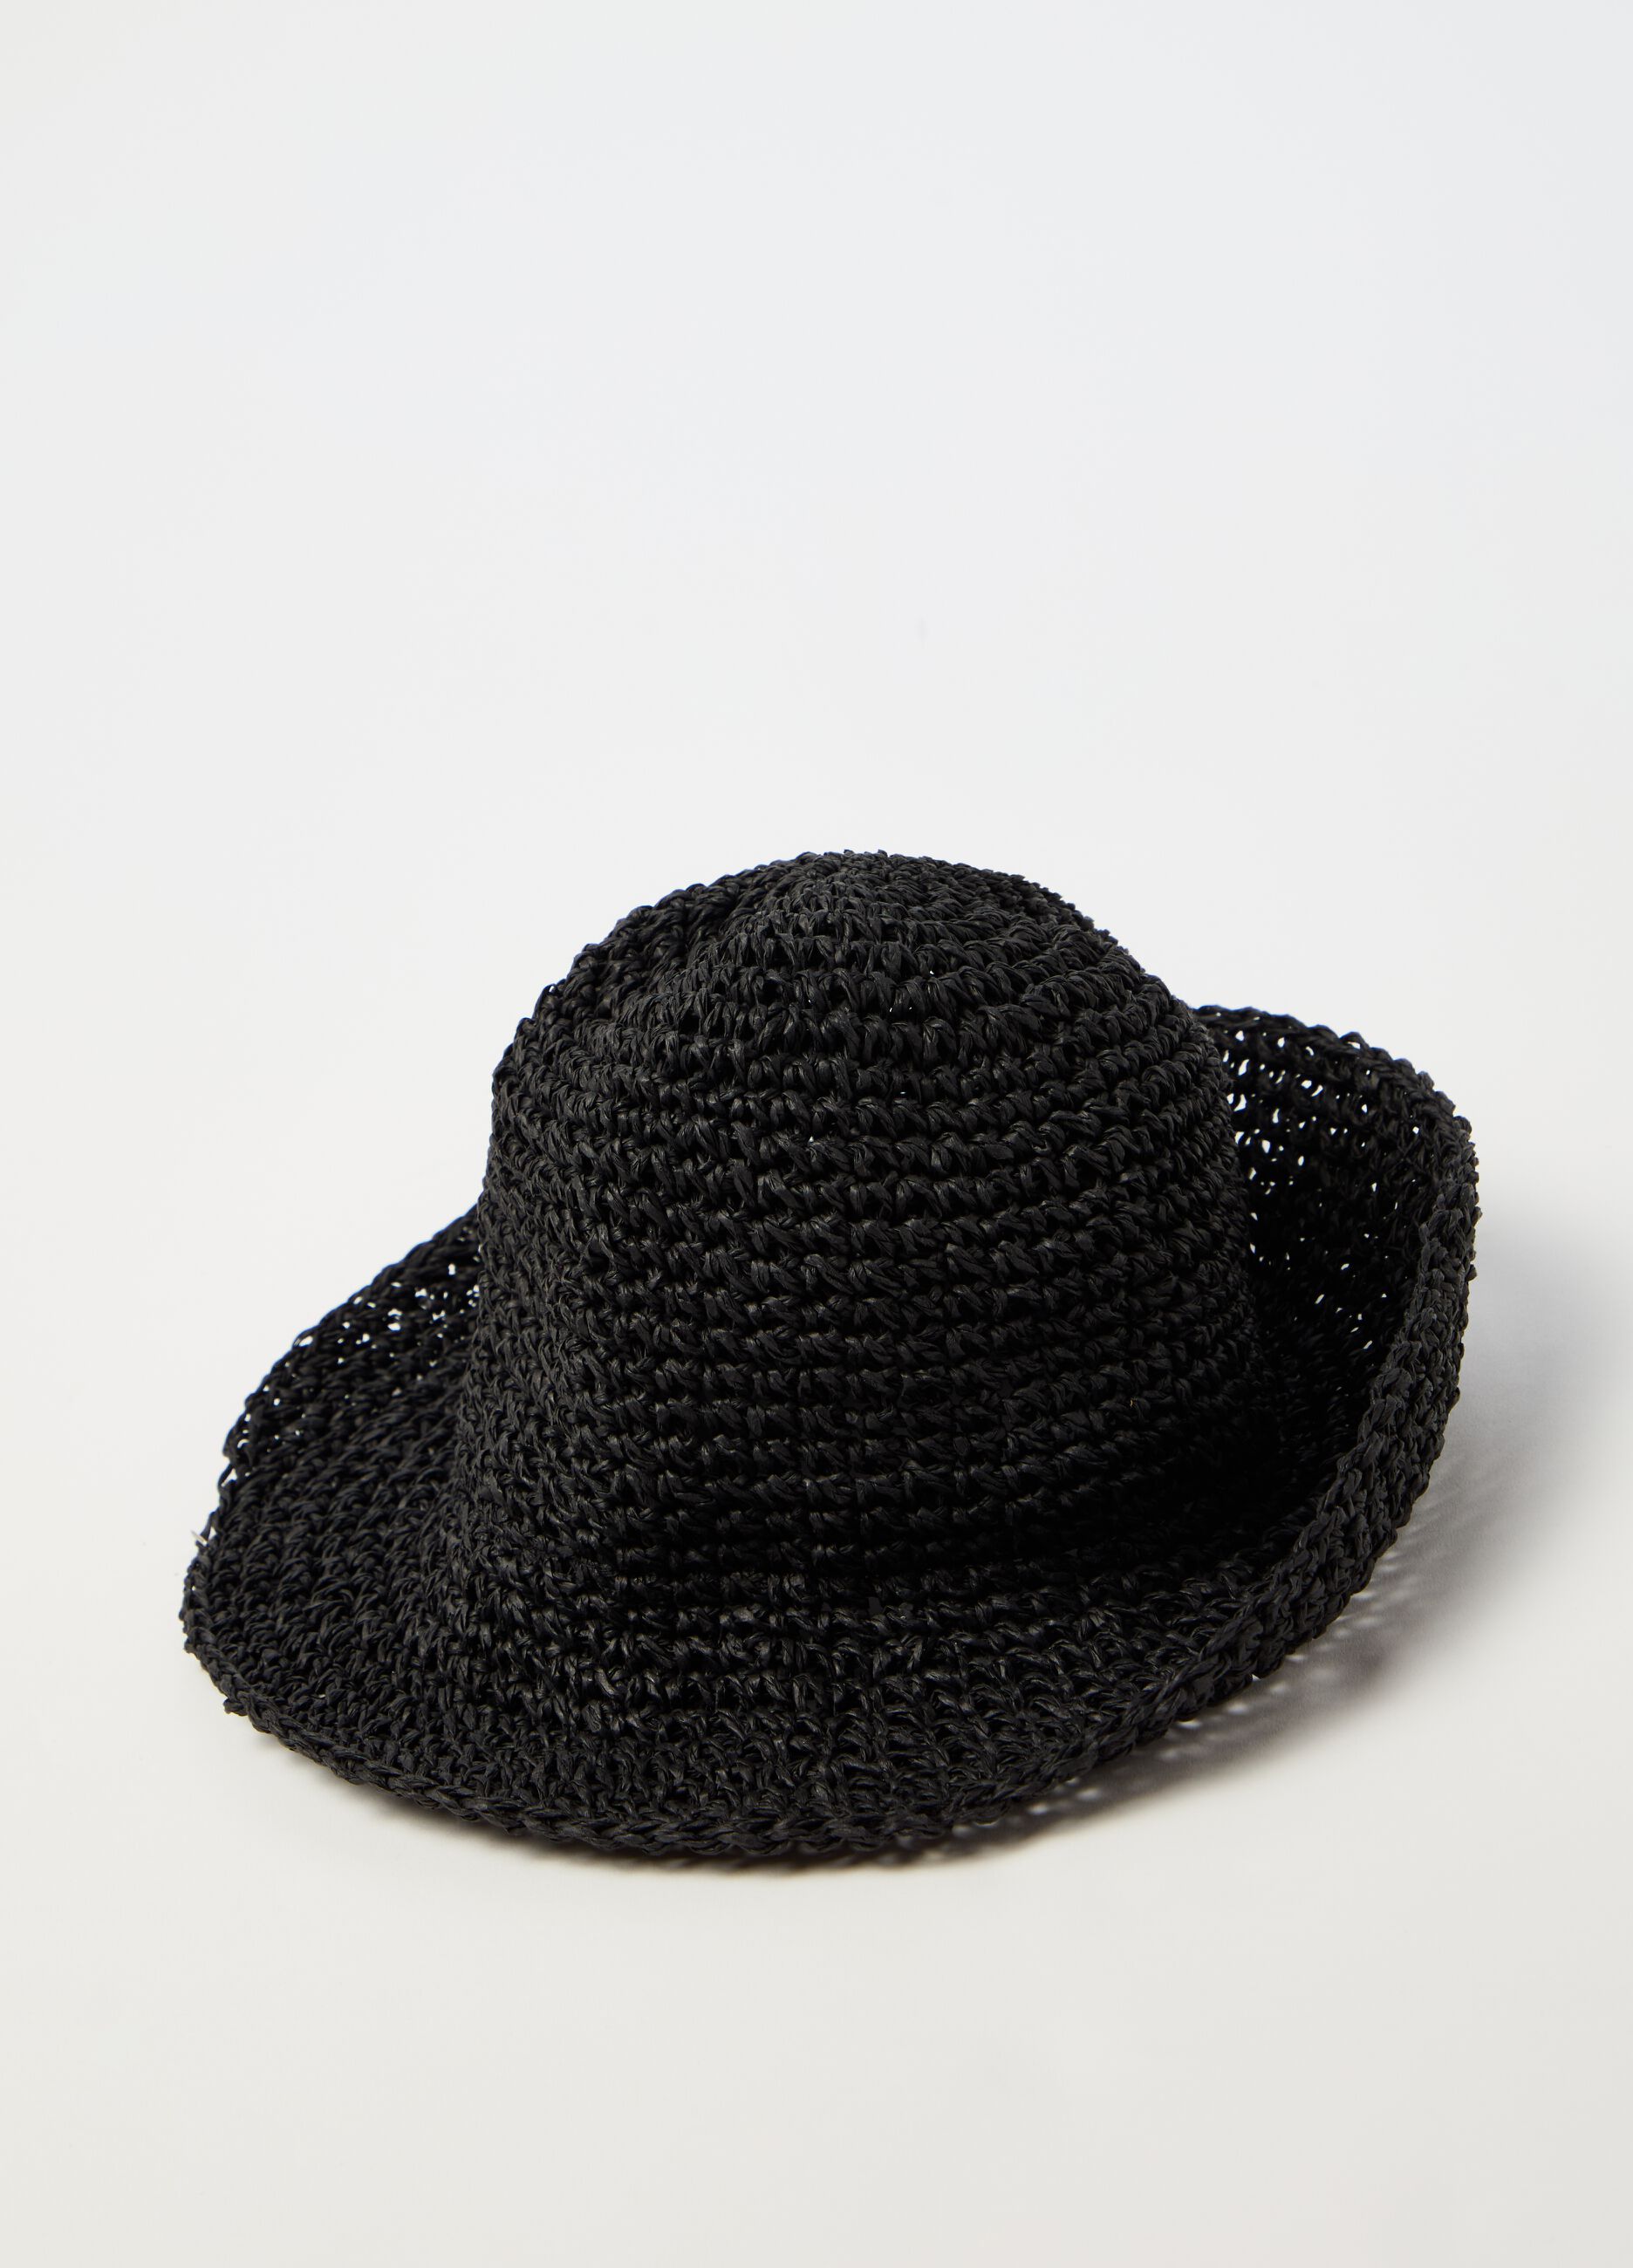 Sombrero de rafia